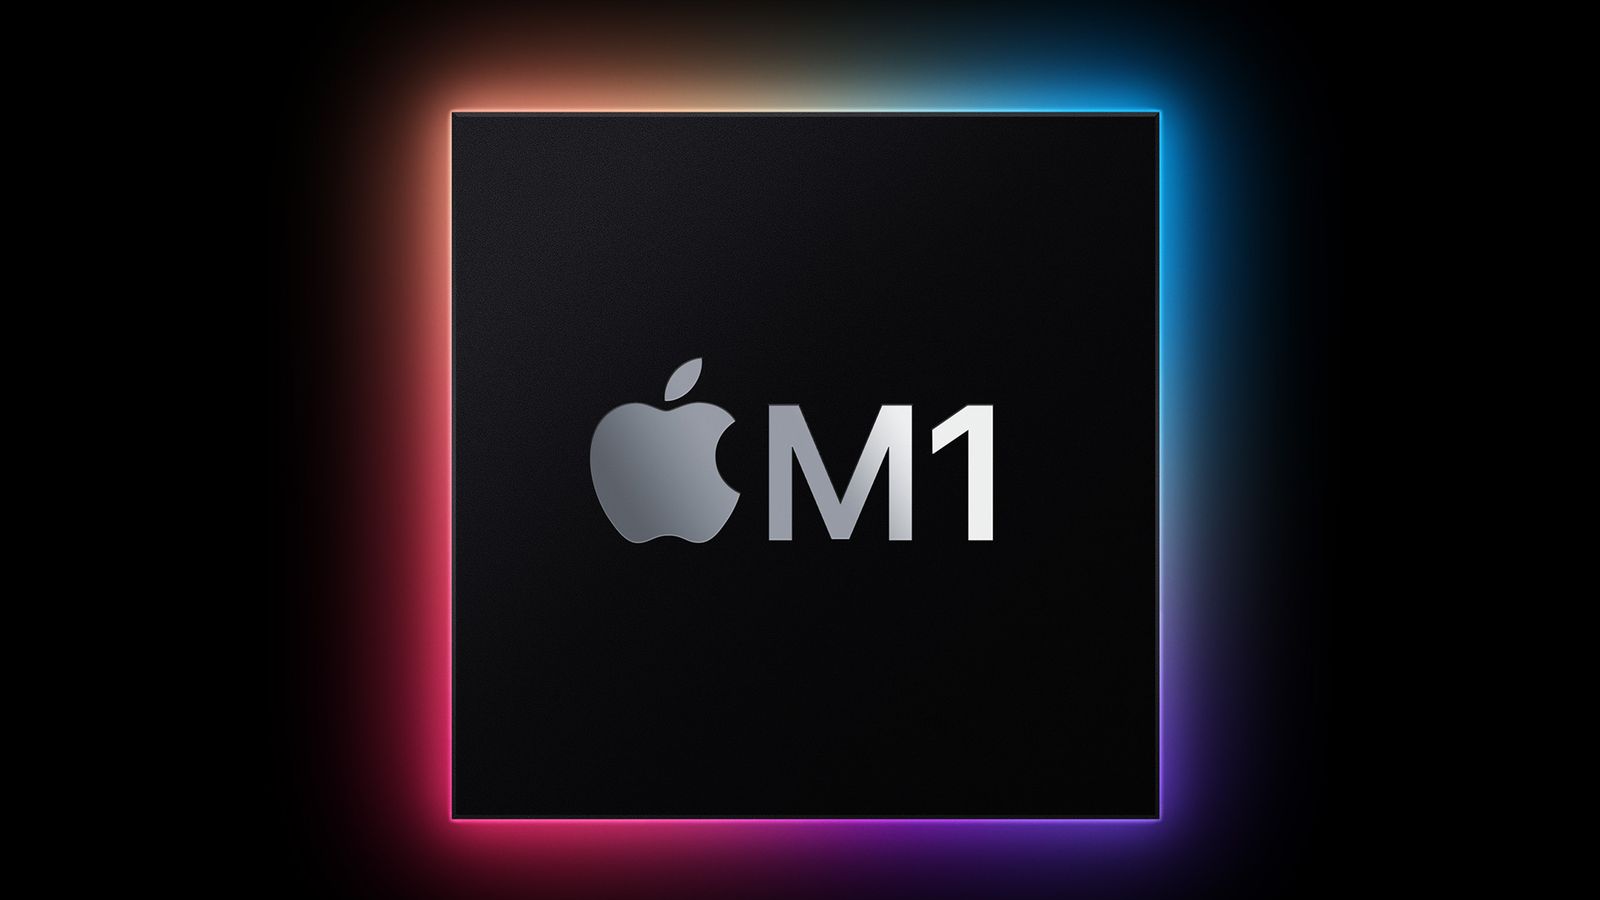 Bạn đã sẵn sàng cho trải nghiệm vô cùng nhanh chóng và mượt mà trên iPad Air M1 cùng những hình nền đầy sắc màu? Cùng với chip M1 \